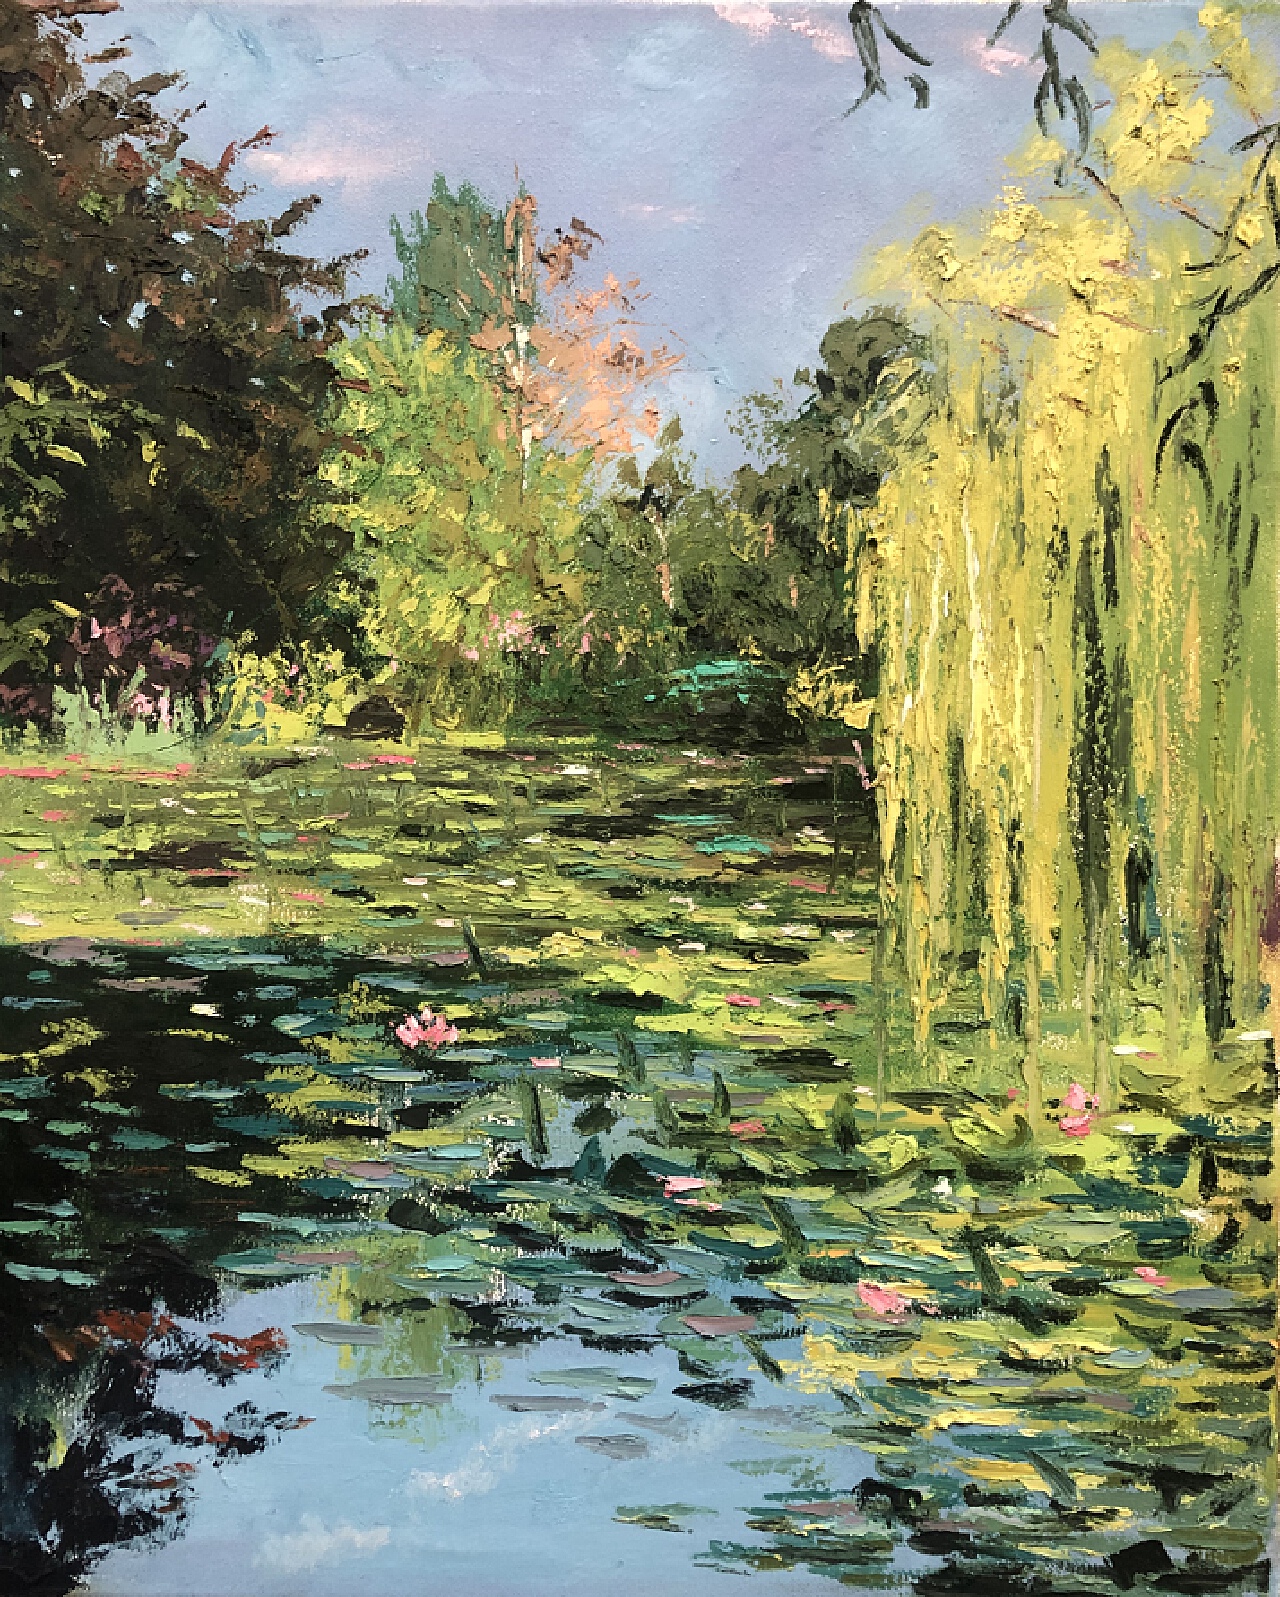 克劳德·莫奈 Claude Monet作品集-197-油画作品-第壹印像